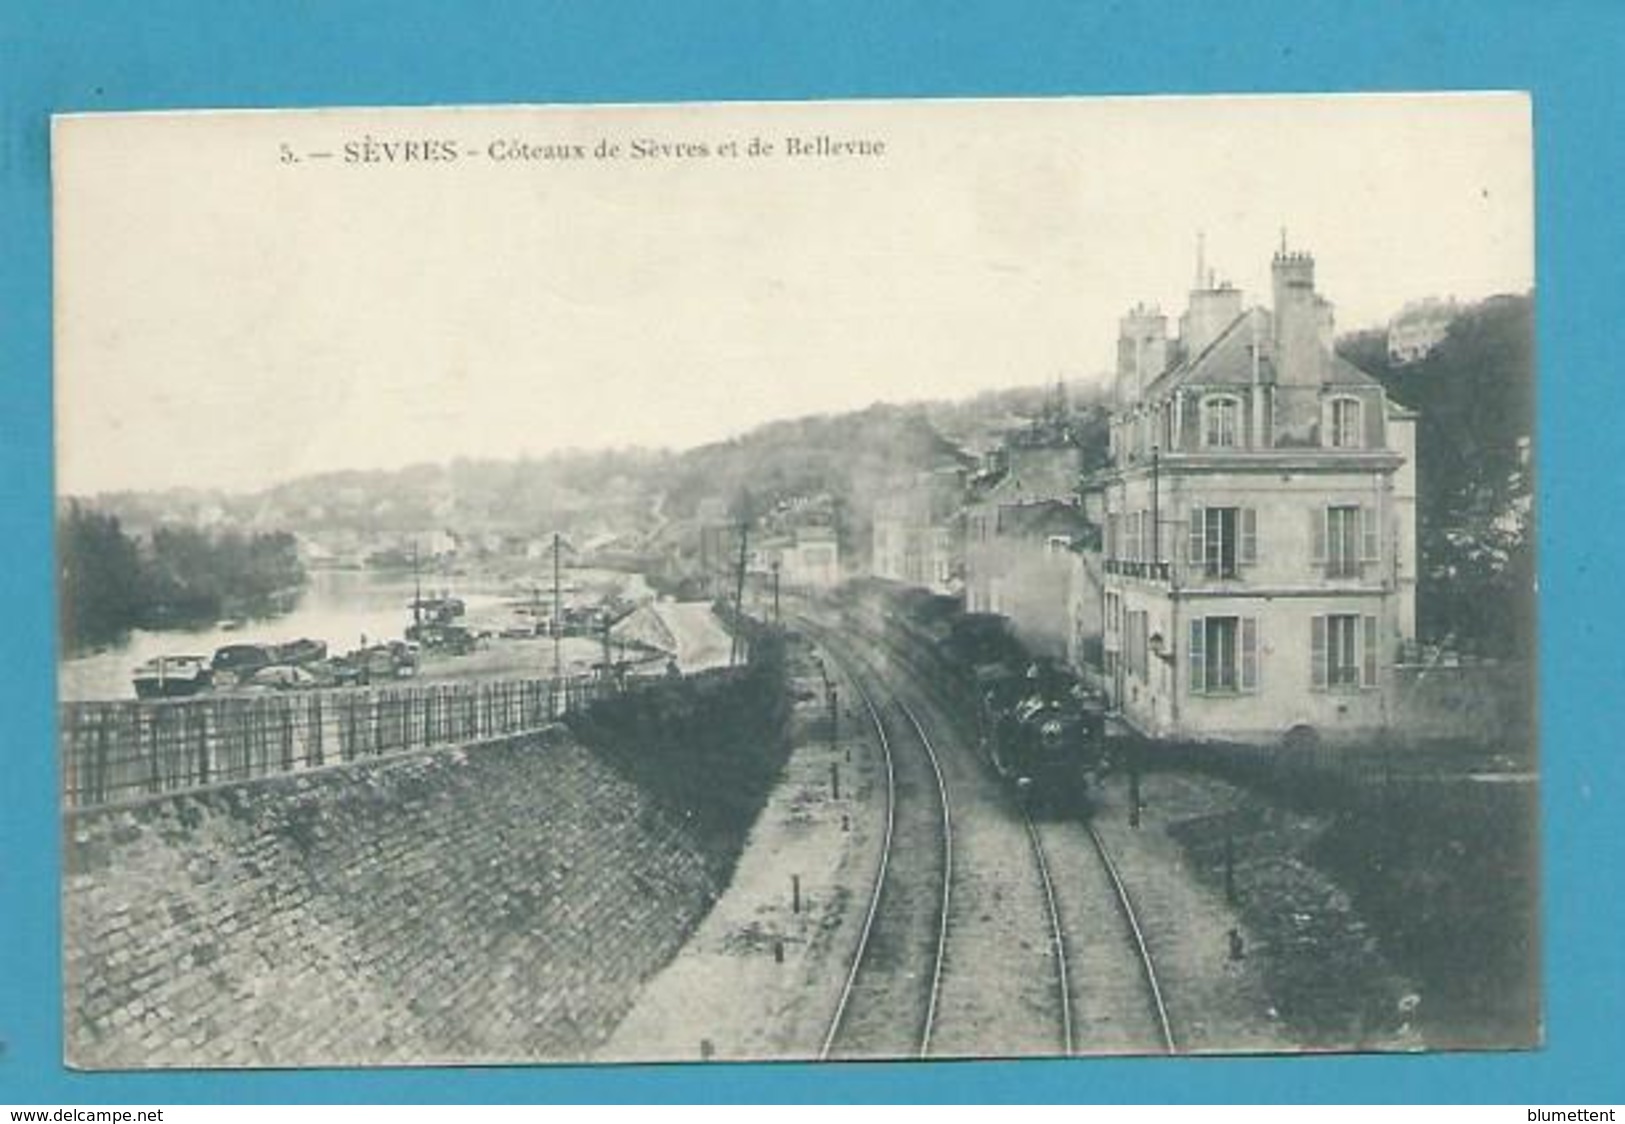 CPA 5 - Chemin De Fer Train Côteaux De Sèvres Et De Bellevue Gare SEVRES 92 - Ville D'Avray